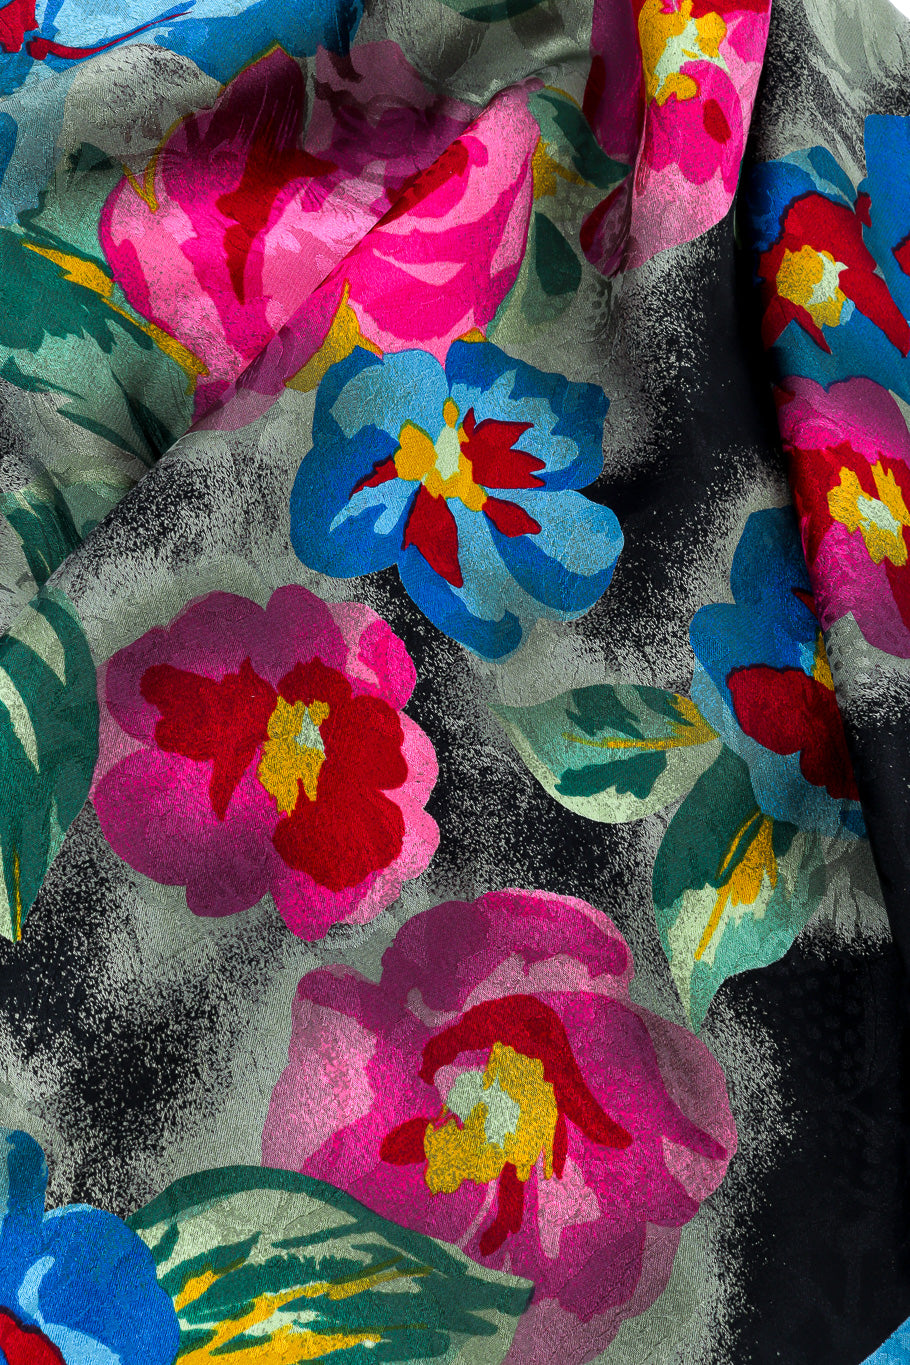 Silk floral scarf by Emanuel Ungaro floral print @recessla